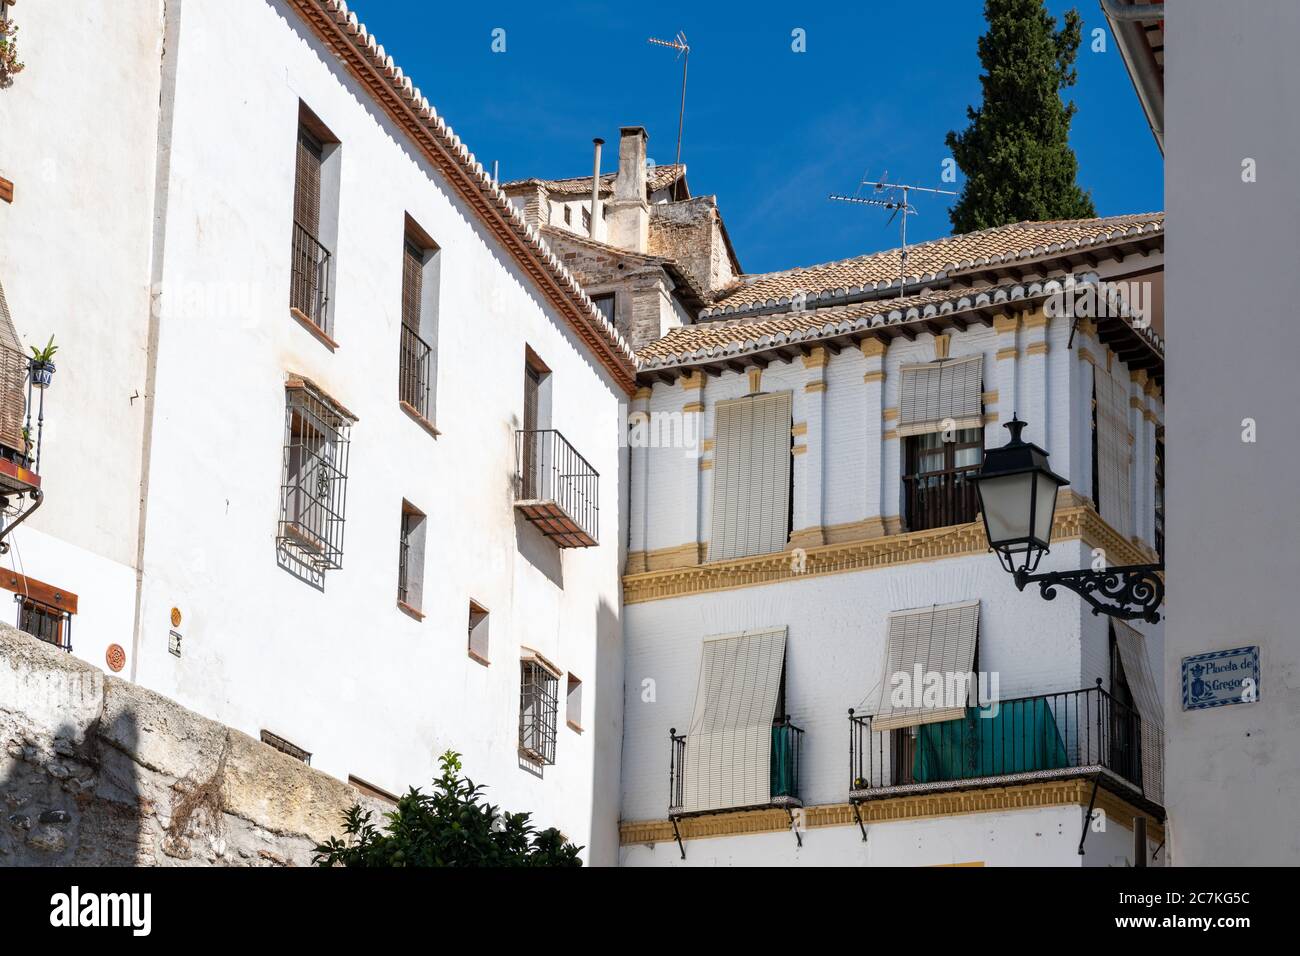 A traditional white-washed villa and tavern in Cuesta de San Gregorio in Granada's Albaicin moorish quarter. Stock Photo